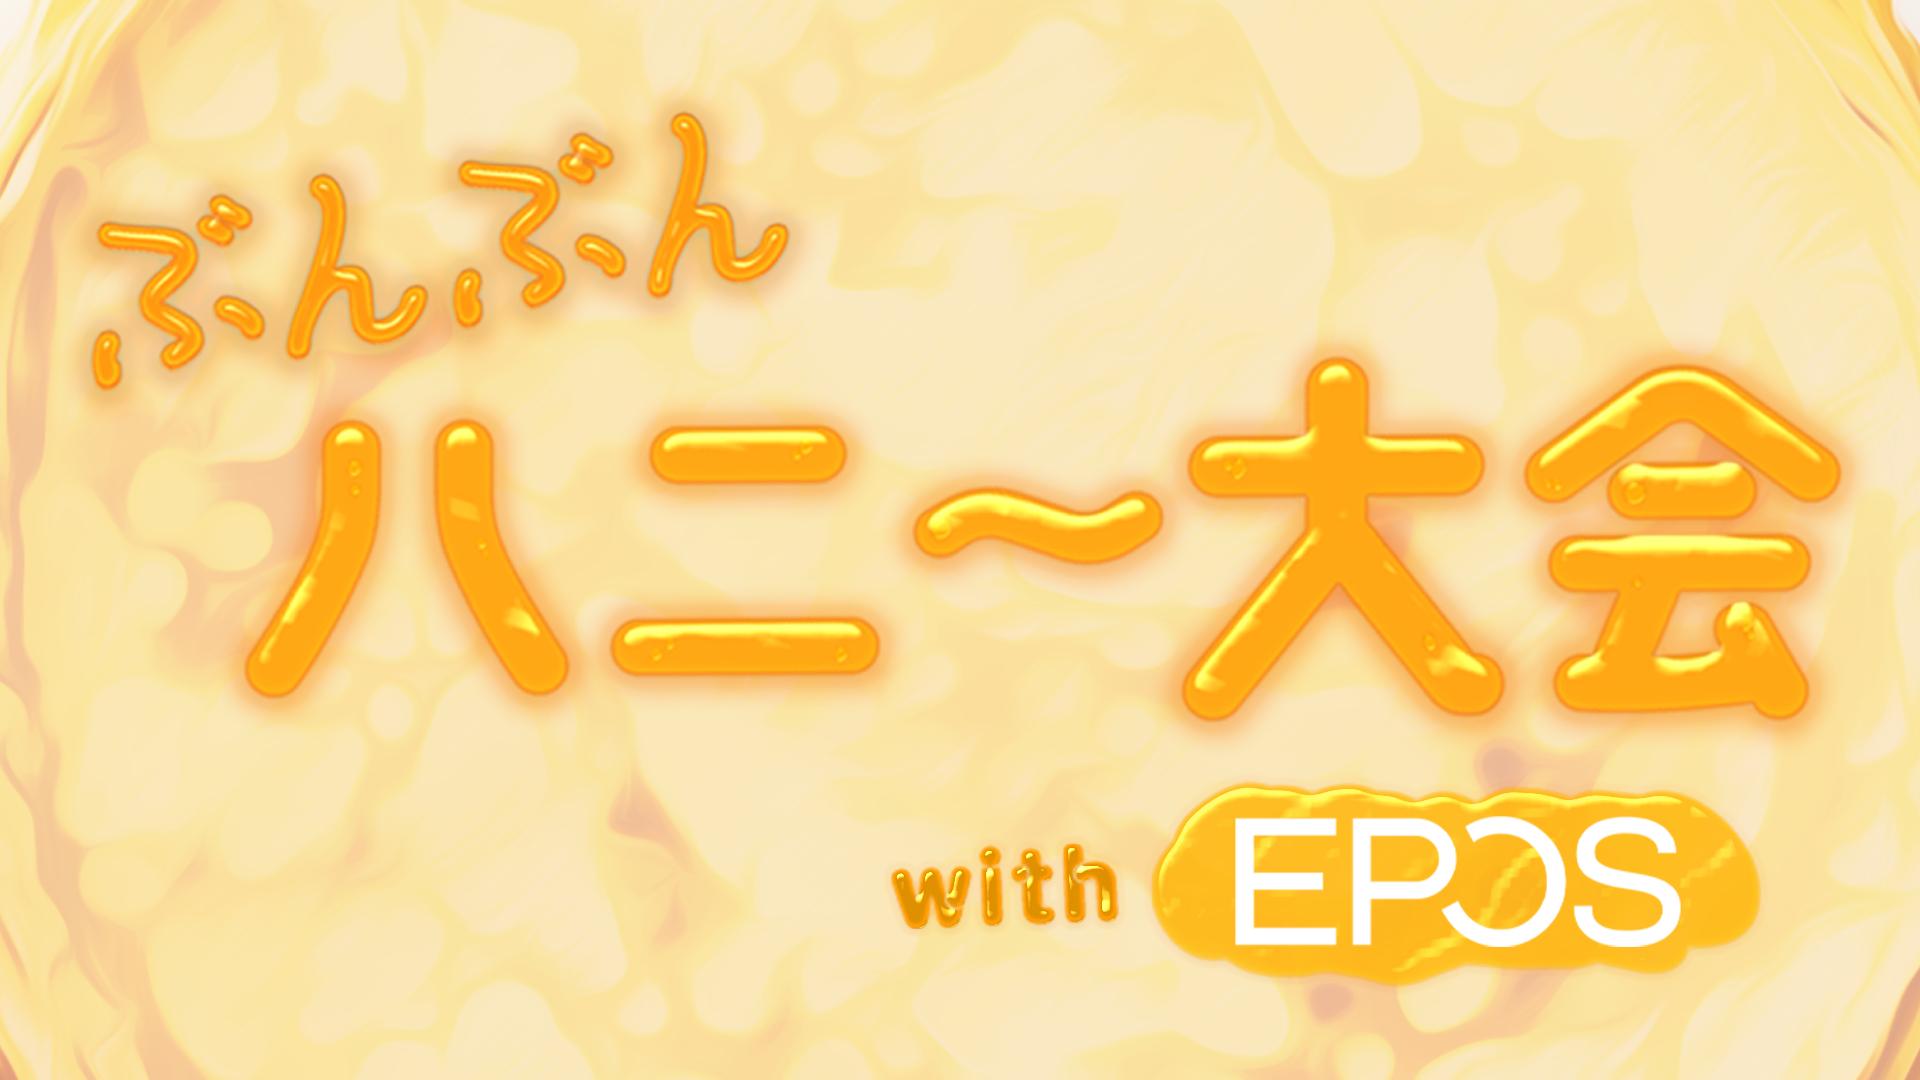 ぶんぶんハニー大会 with EPOS feature image